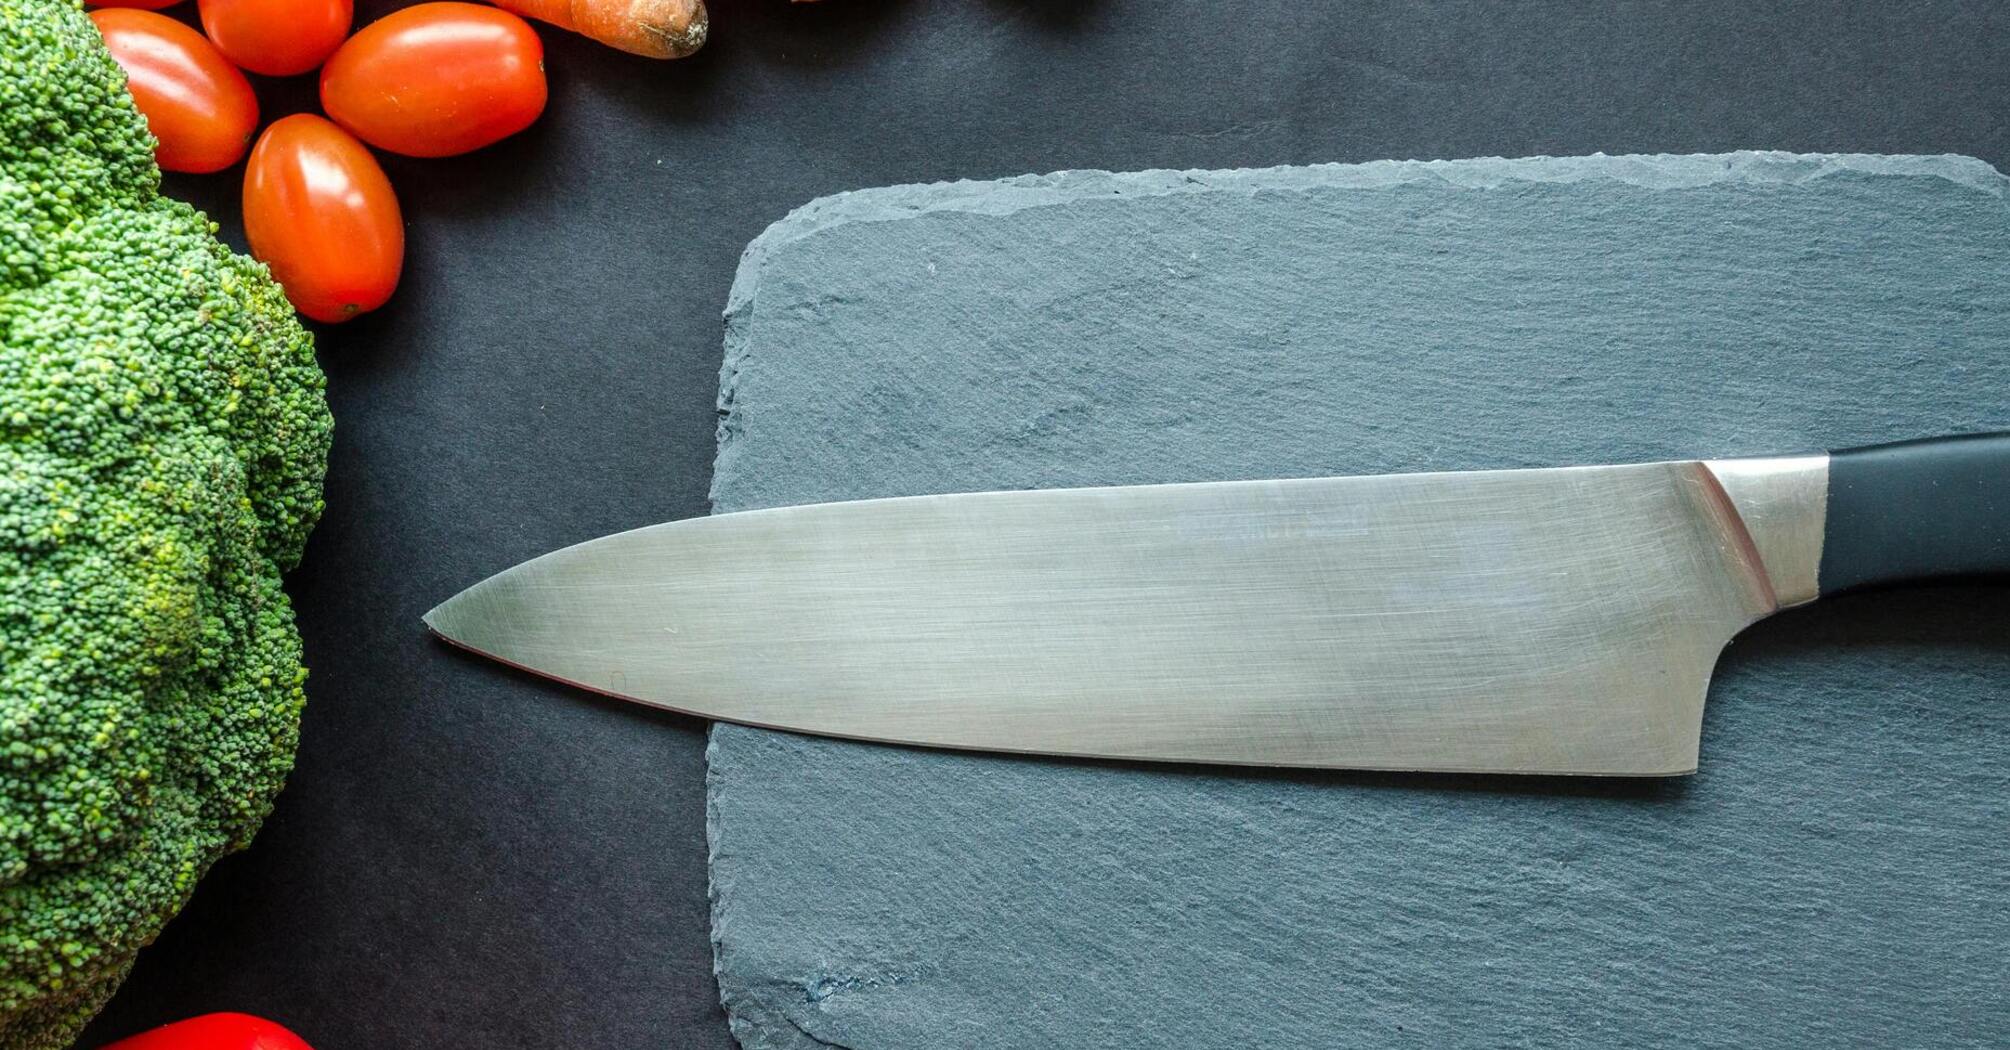 Ножи из порошковой стали: преимущества и недостатки, которые следует учесть перед покупкой